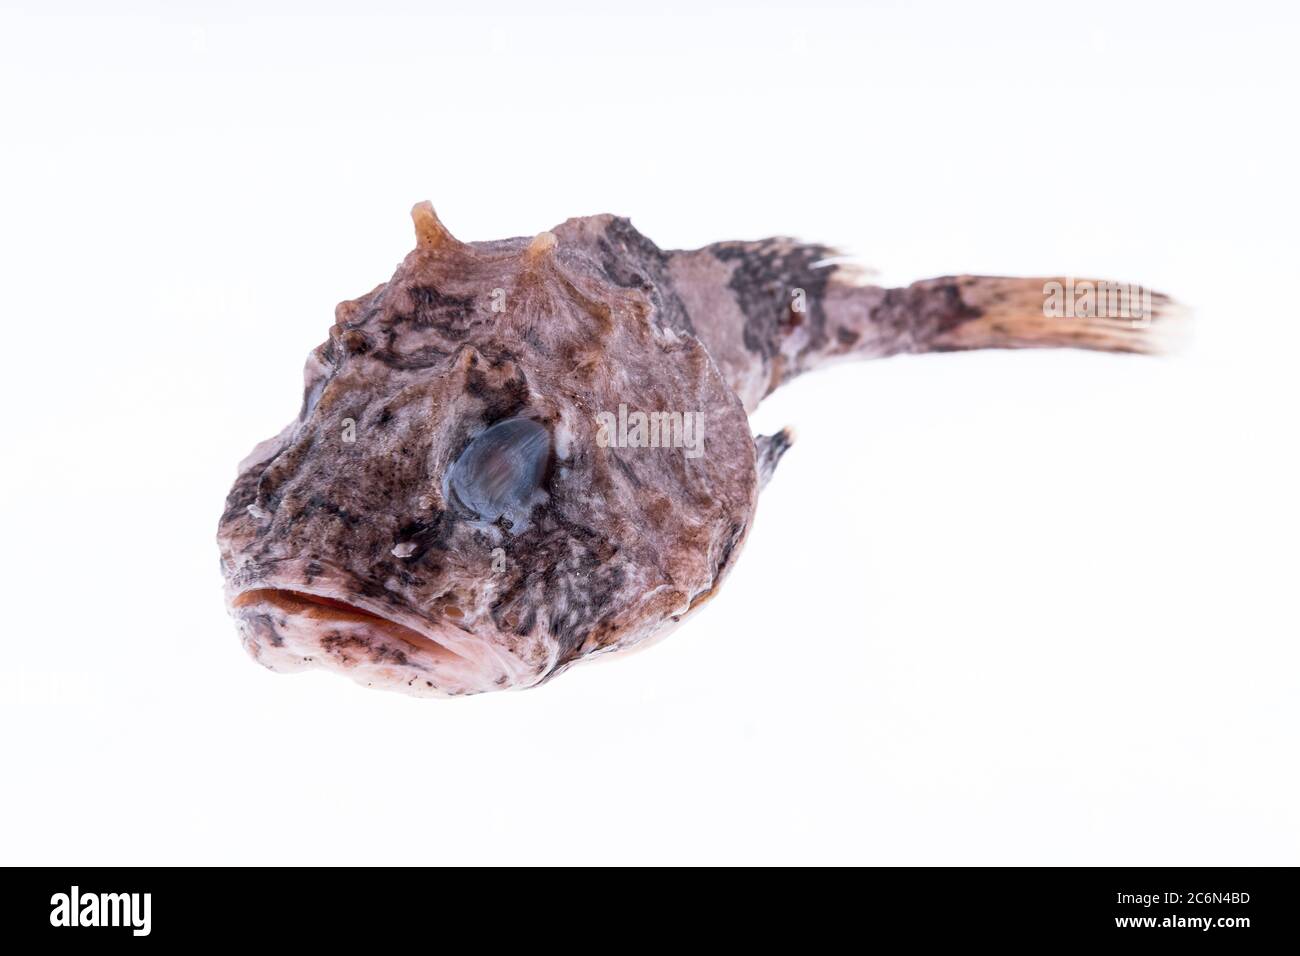 (Ne pas avoir le catalogage correspondant de ce poisson, sera mise à jour) de la collection de l'Institut espagnol d'océanographie de Malaga, Espagne. Banque D'Images